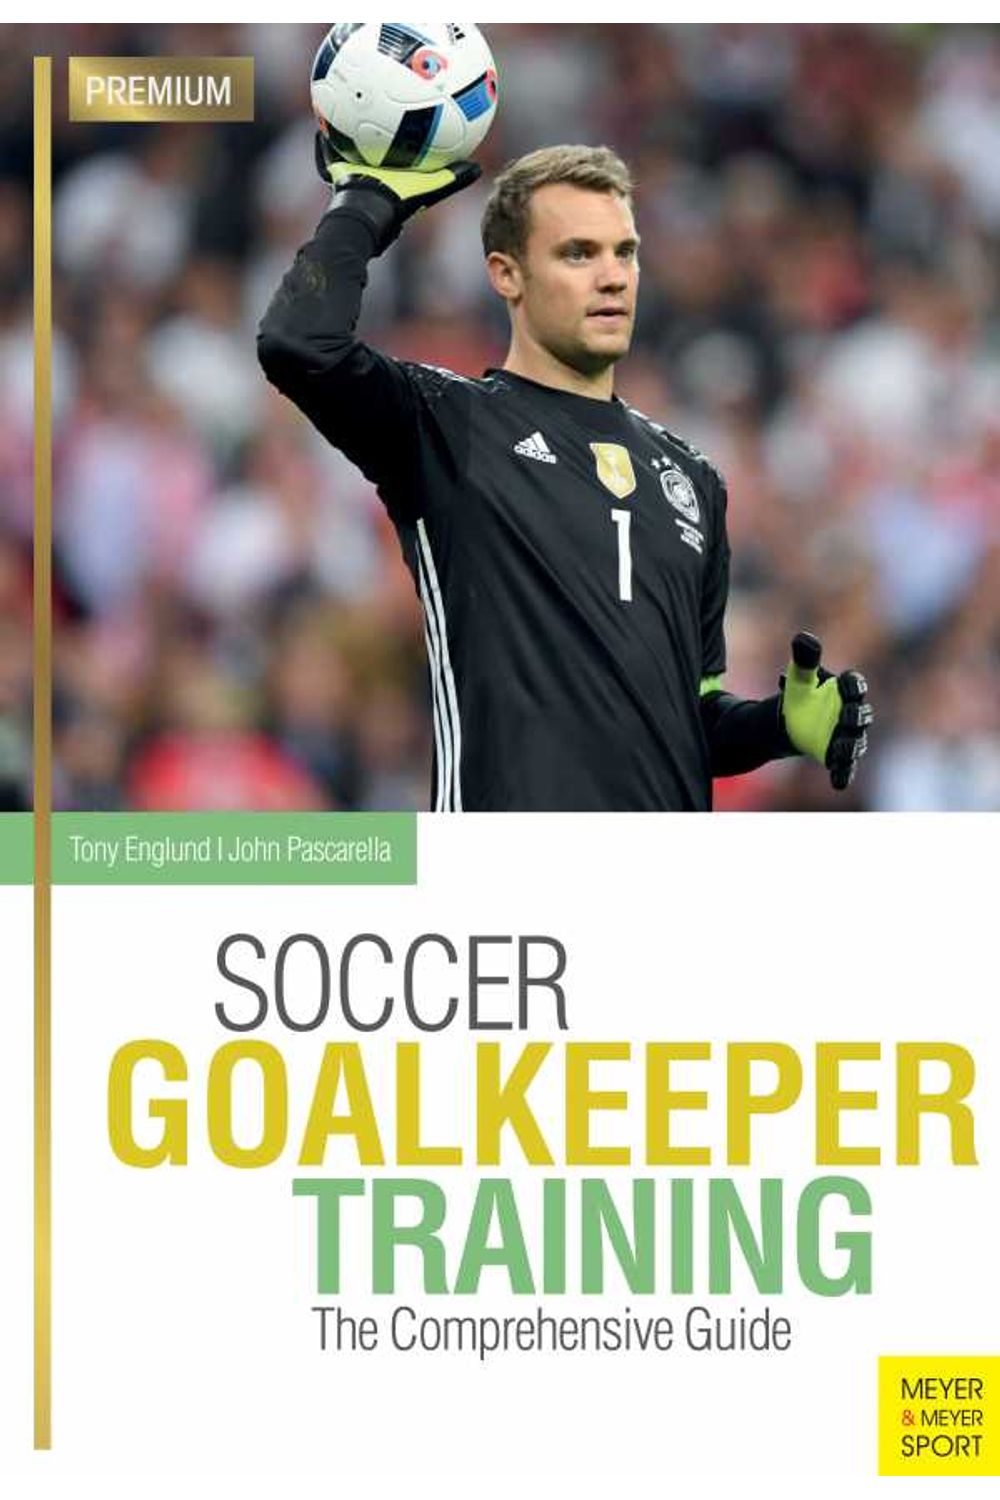 bw-soccer-goalkeeper-training-meyer-meyer-sport-9781782554370